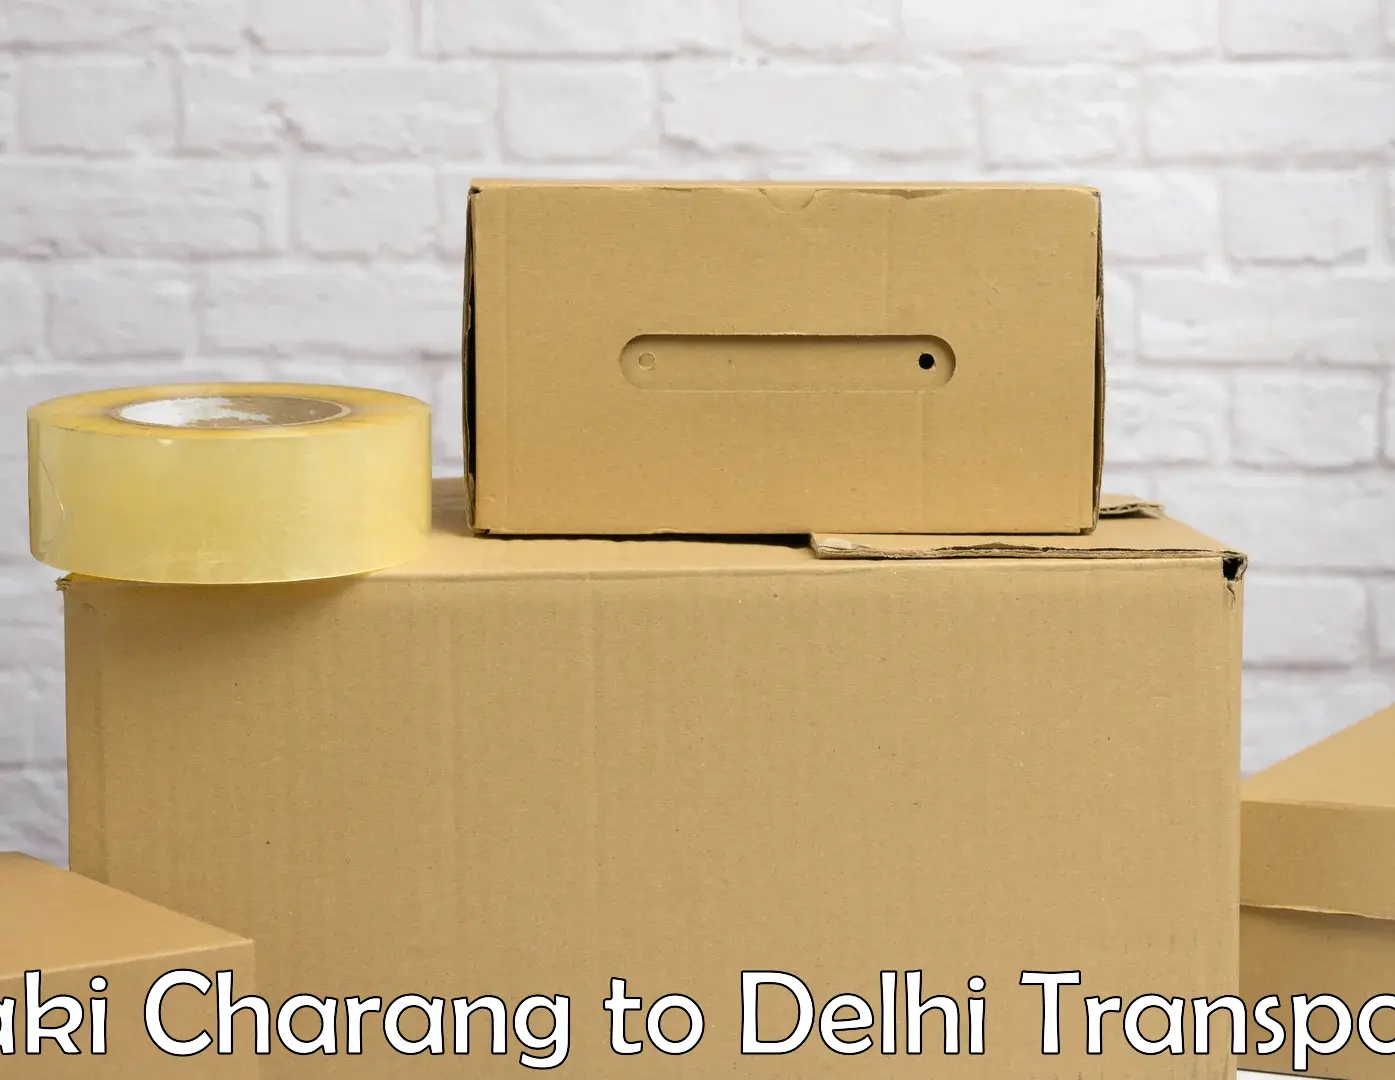 Nationwide transport services Saki Charang to Jamia Millia Islamia New Delhi